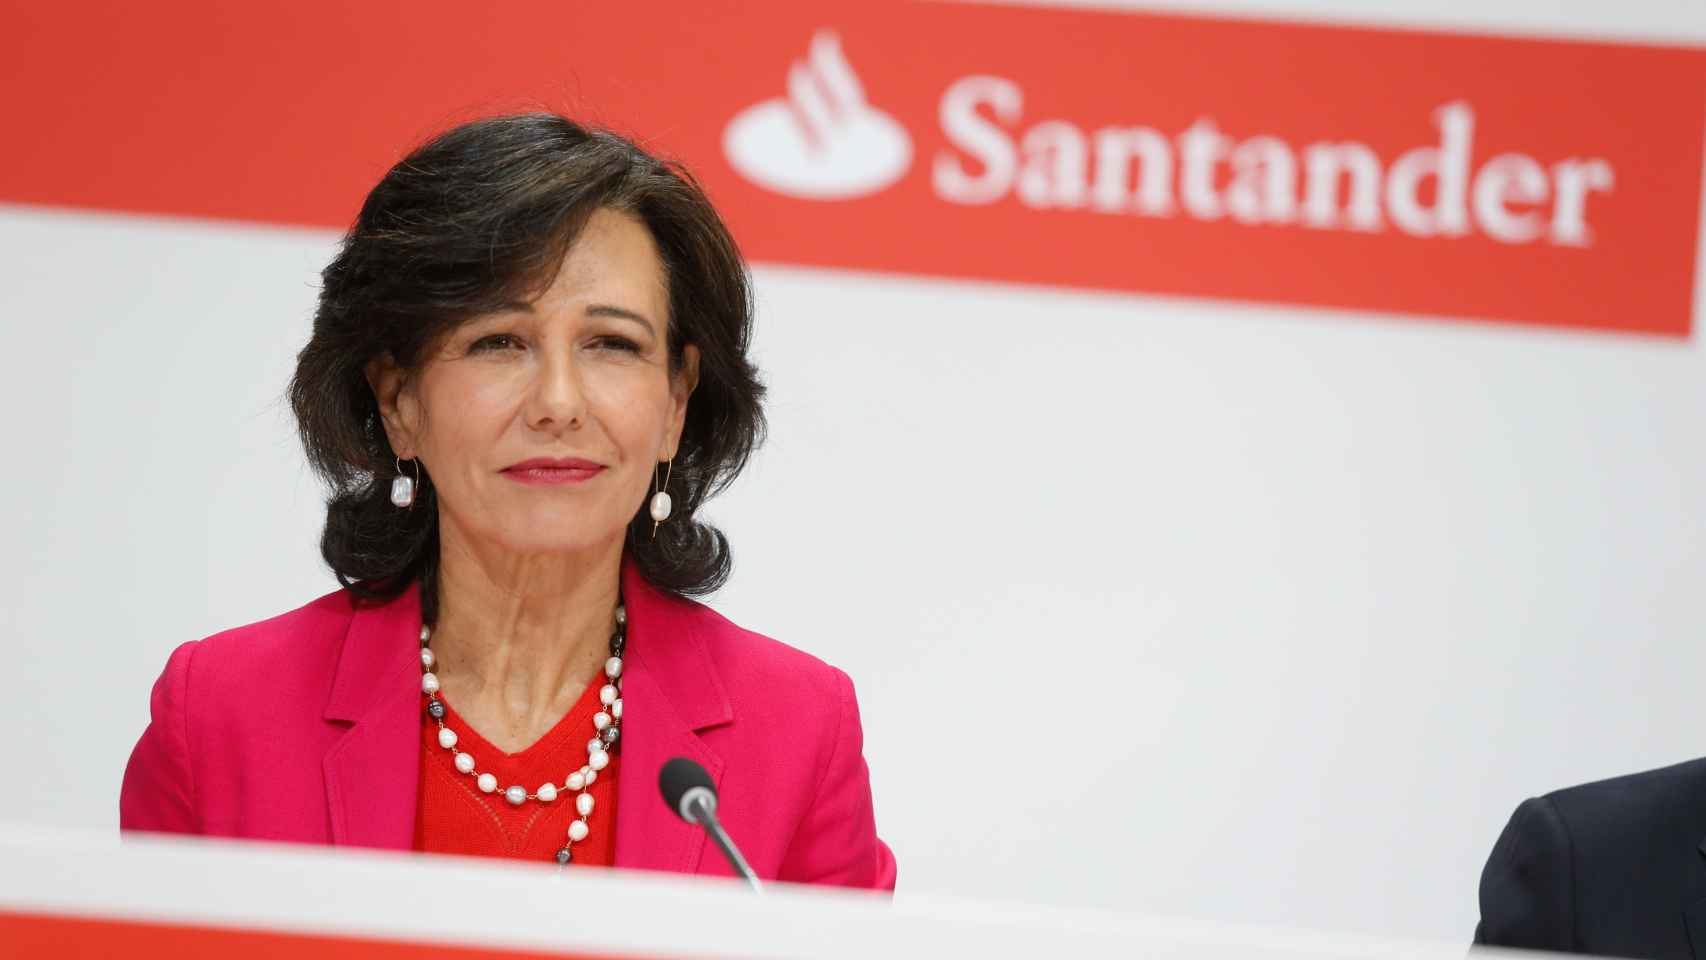 La presidenta del Banco Santander en la rueda de prensa sobre la compra del Banco Popular.